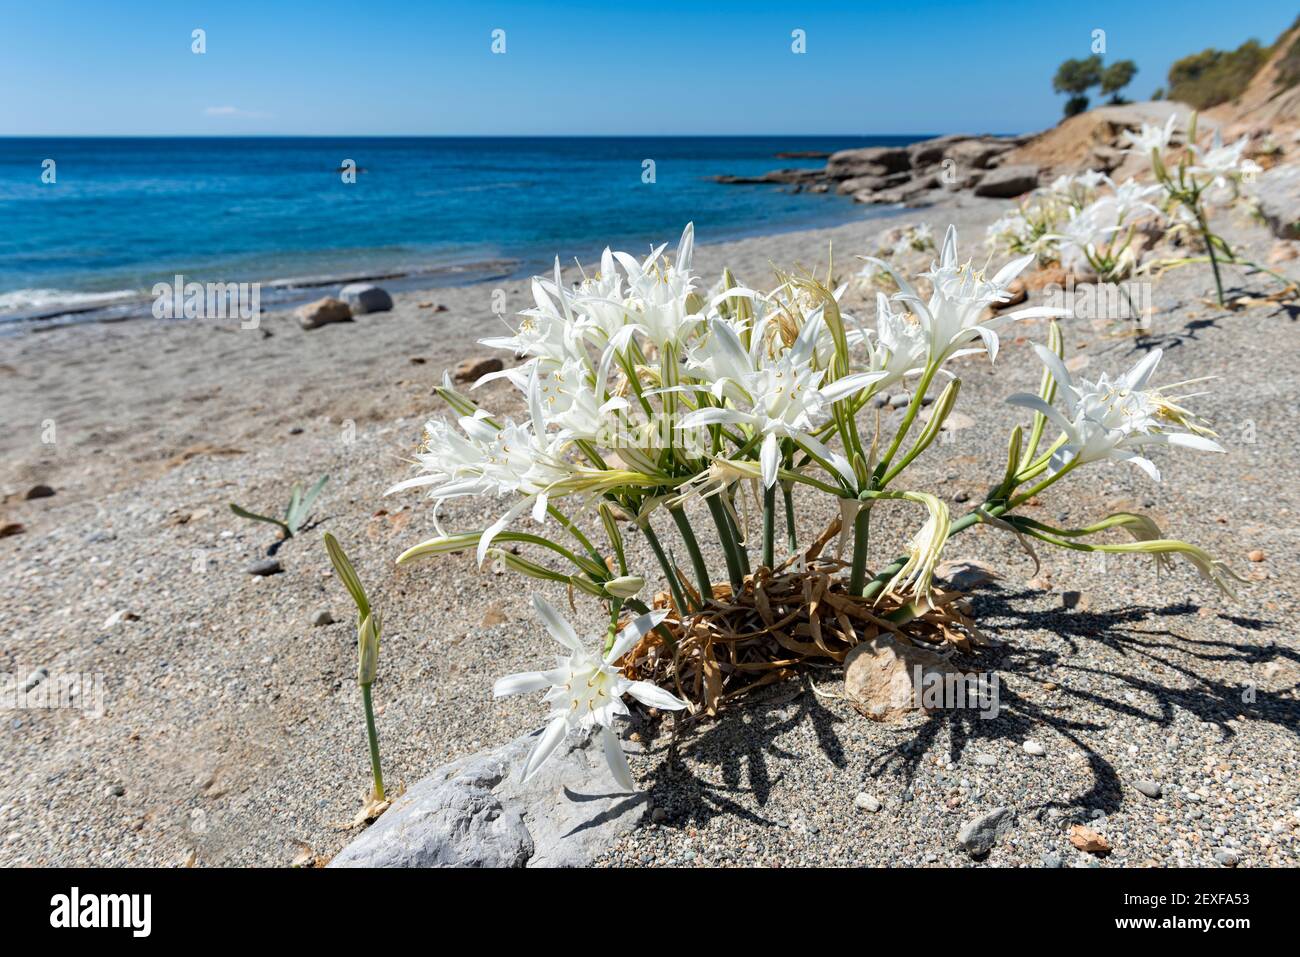 Weiße wilde Blumen von Lilien am Strand am mittelmeer. Selektiver Fokus, Nahaufnahme. Kreta, Griechenland. Stockfoto